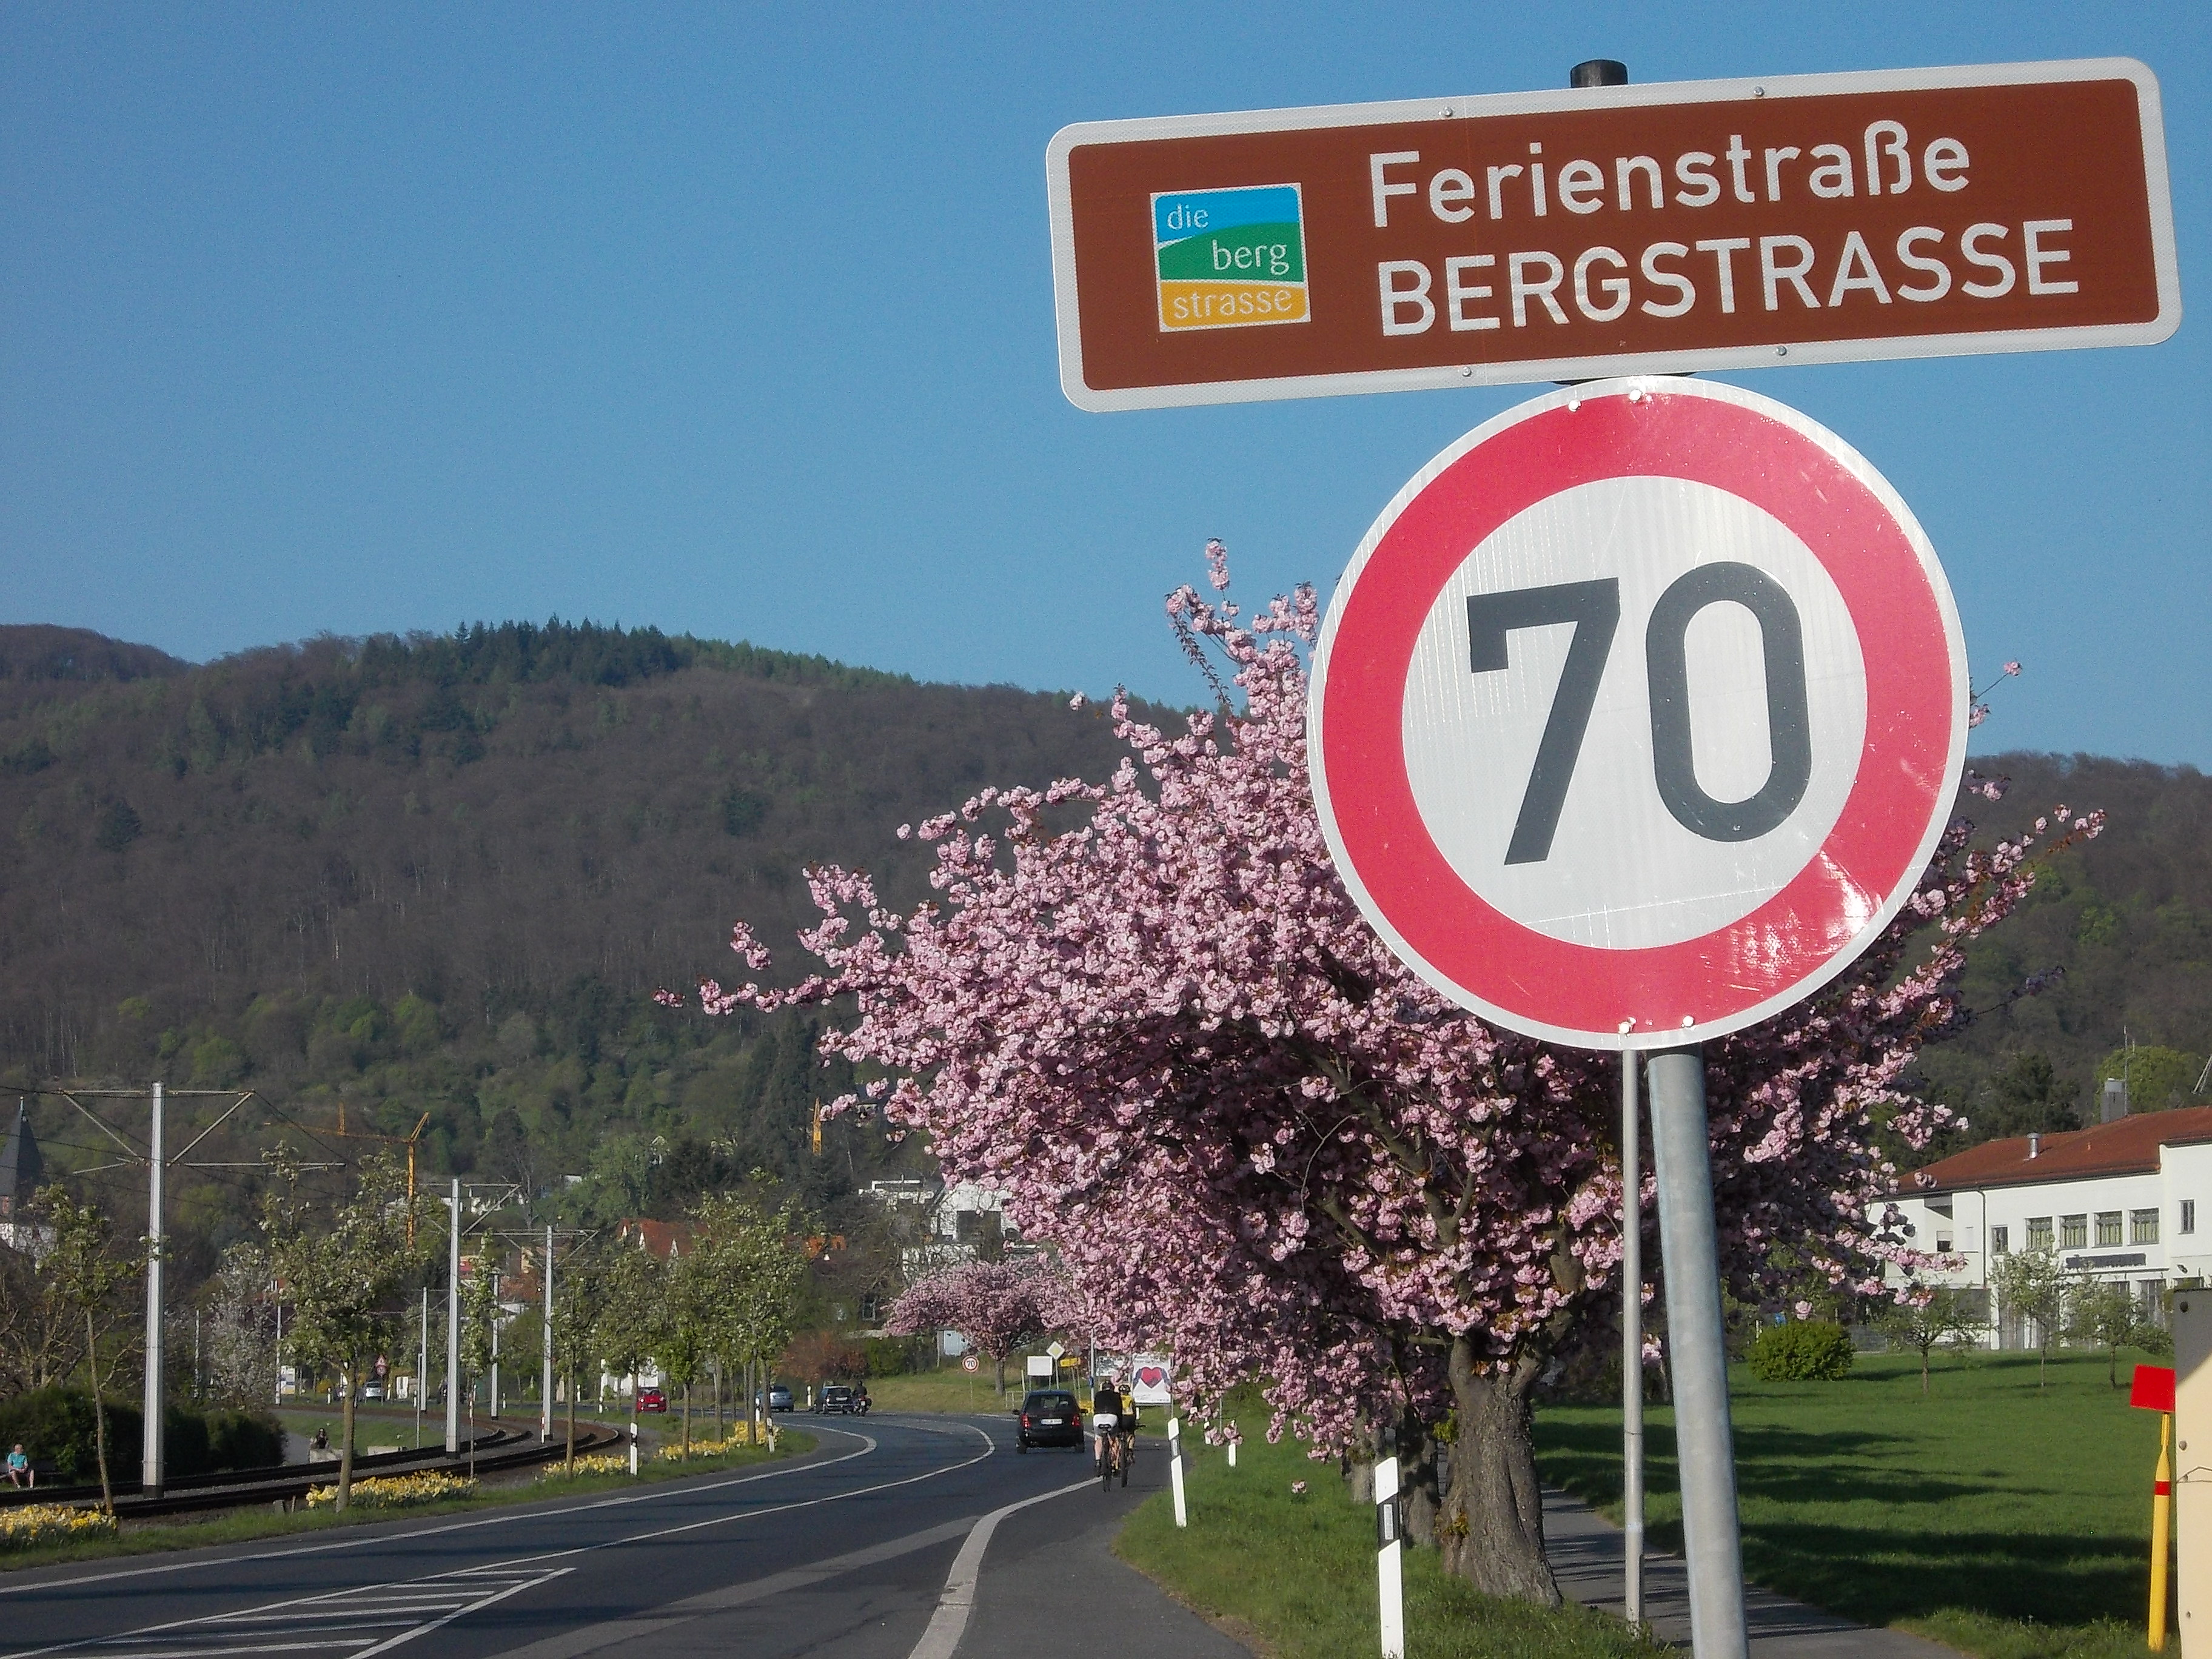 Bergstraße